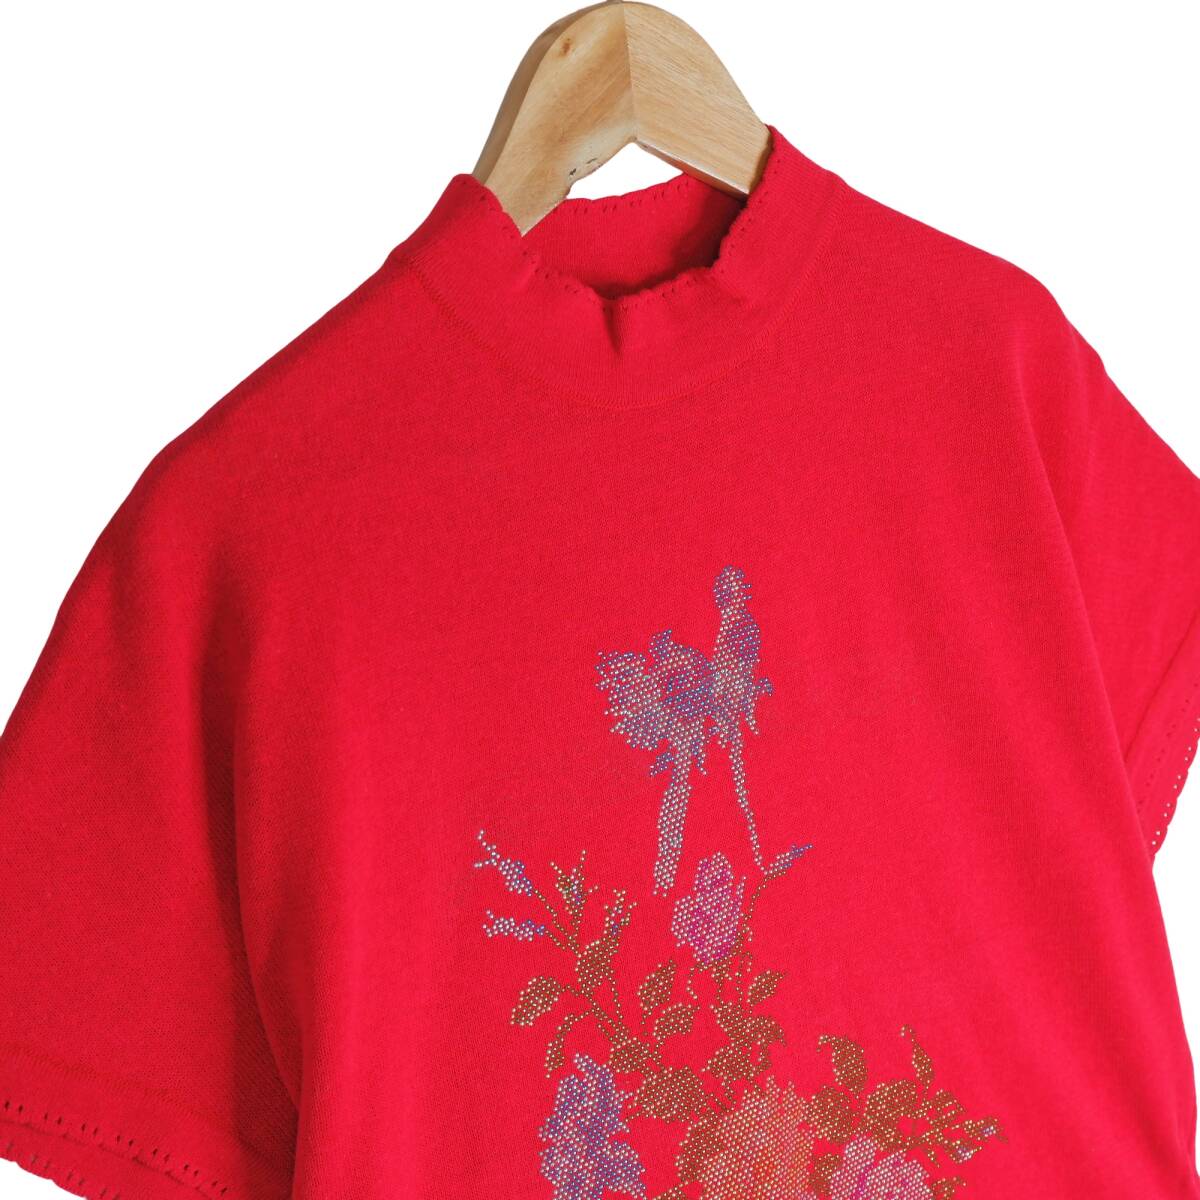 ◆新品 定価3.1万円◆ 伊太利屋 イタリヤ 豪華 ラインストーン サマーニット 半袖 カットソー Tシャツ 赤 レッド レディース 11 L 0814E0の画像2